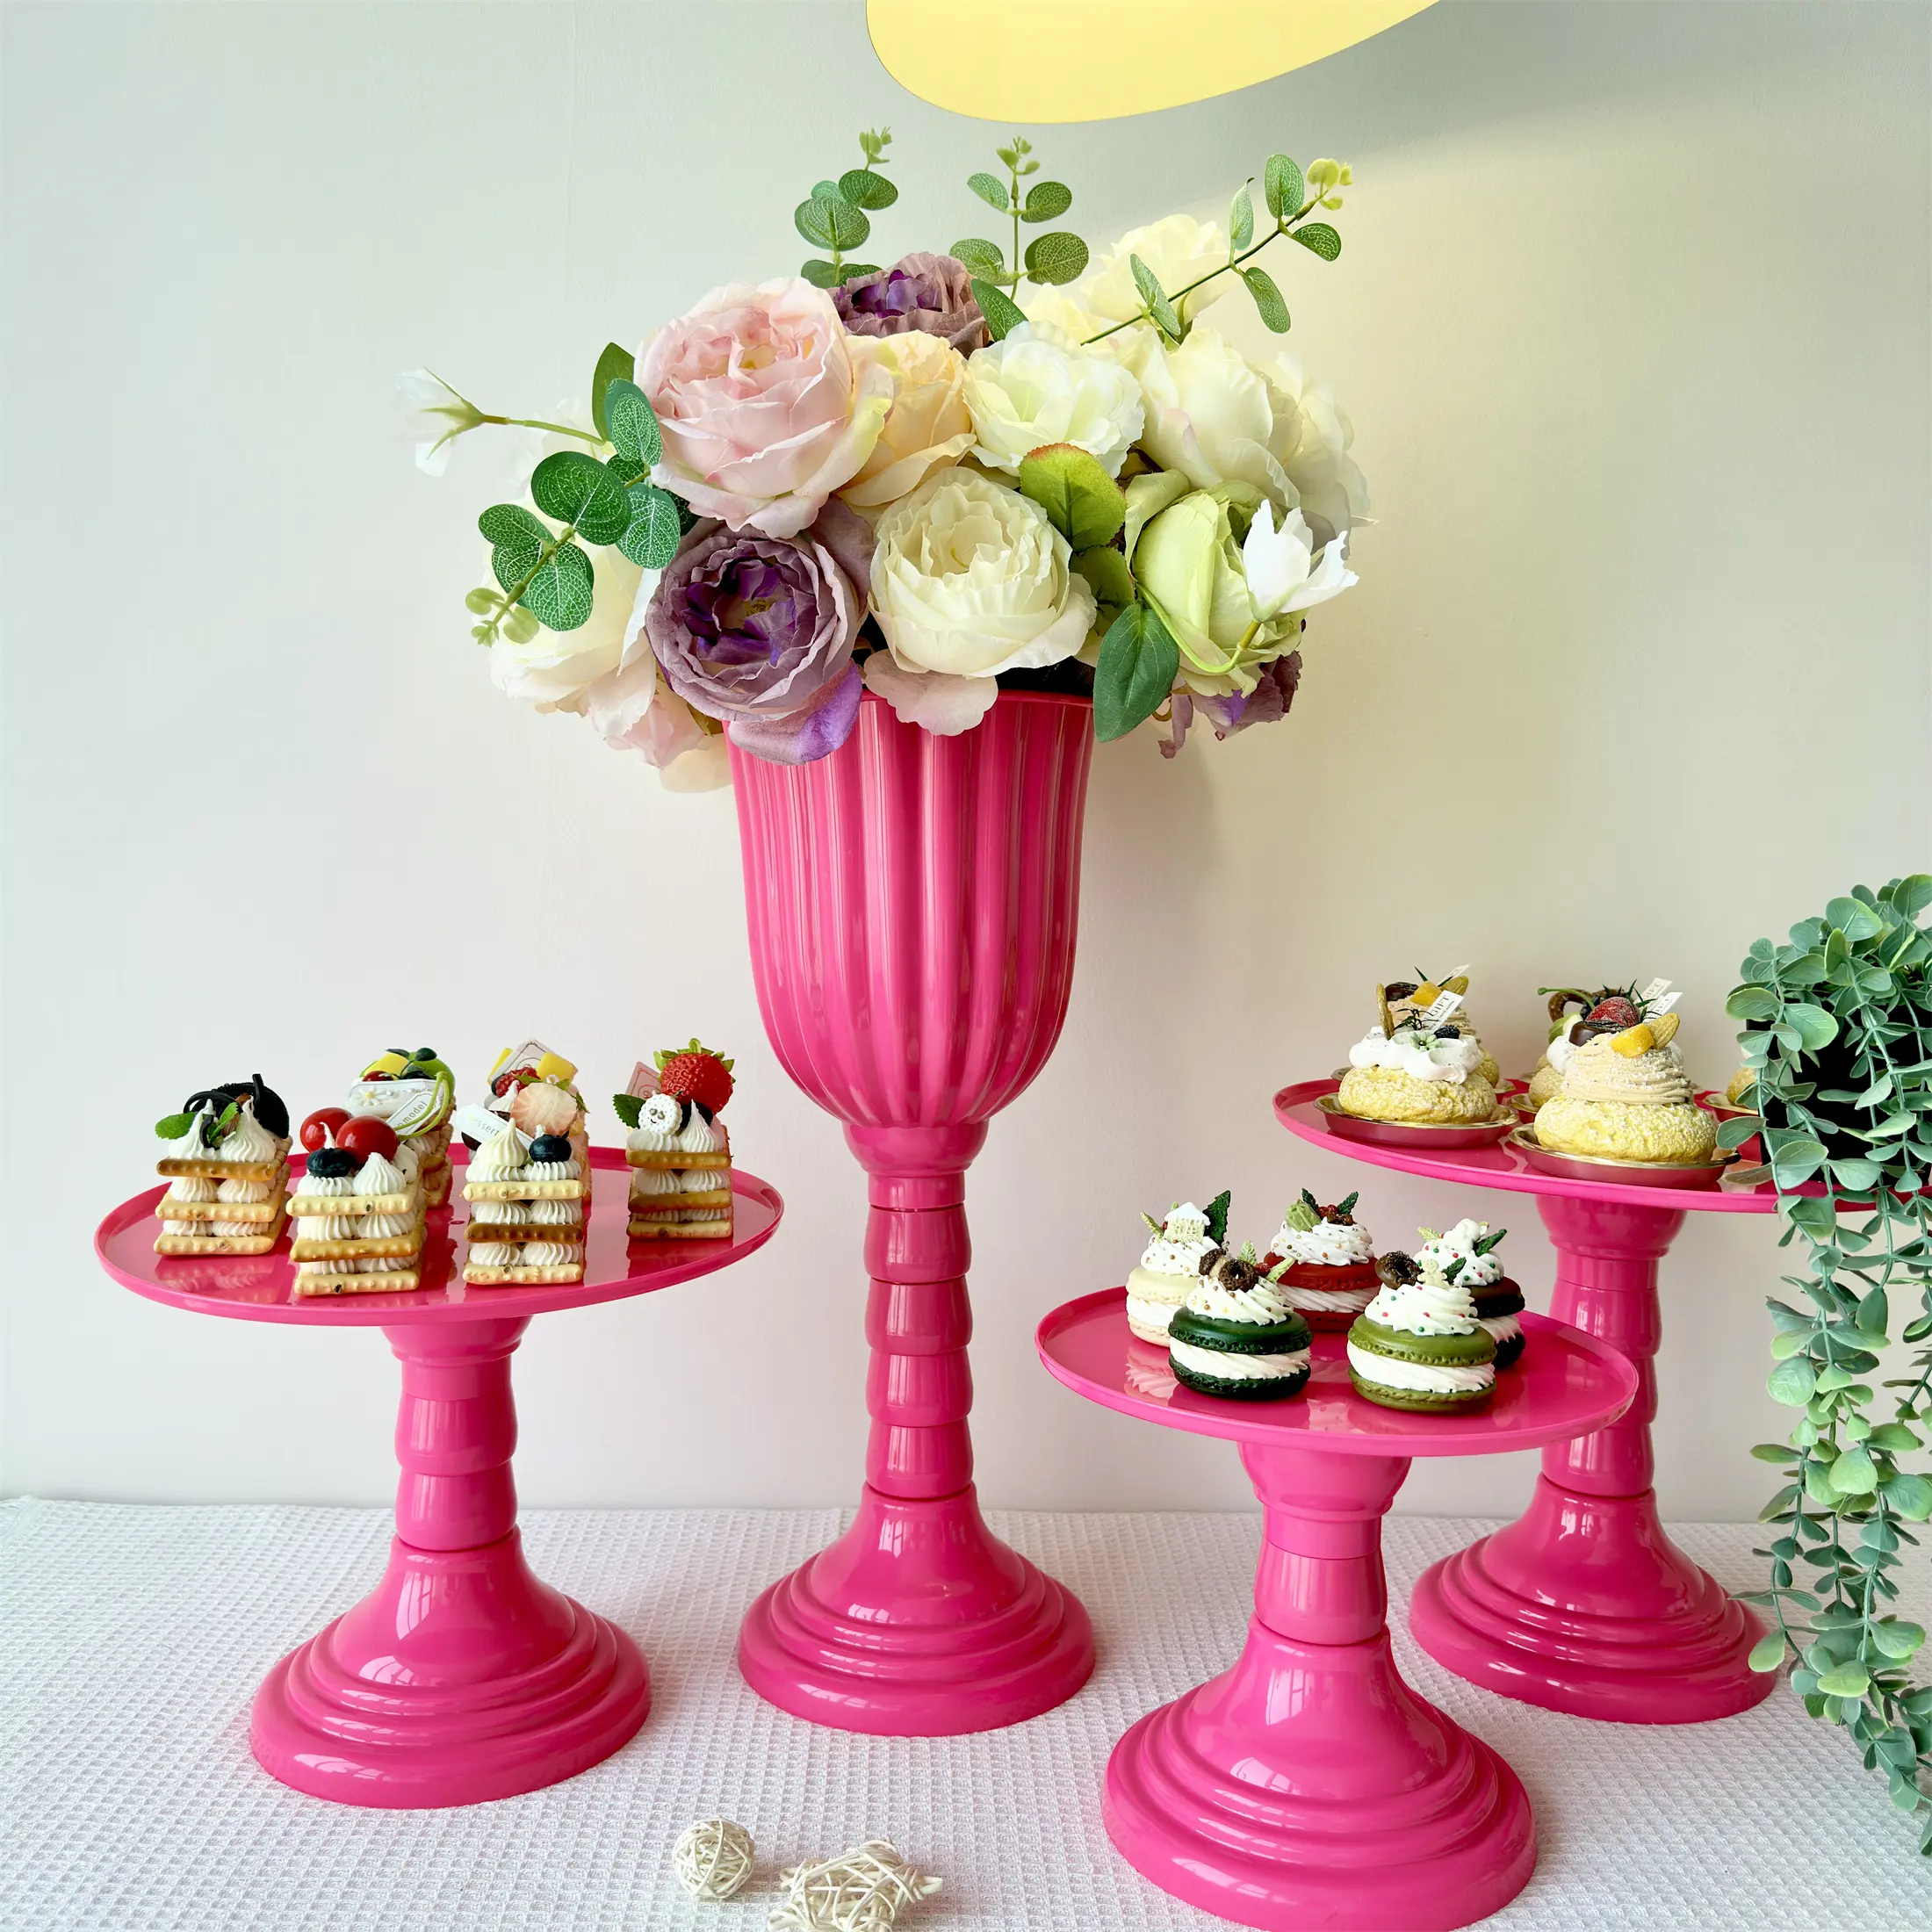 Florero de plástico duradero, pedestal para centros de mesa, jarrones cilíndricos para decoraciones de boda, fiesta de cumpleaños